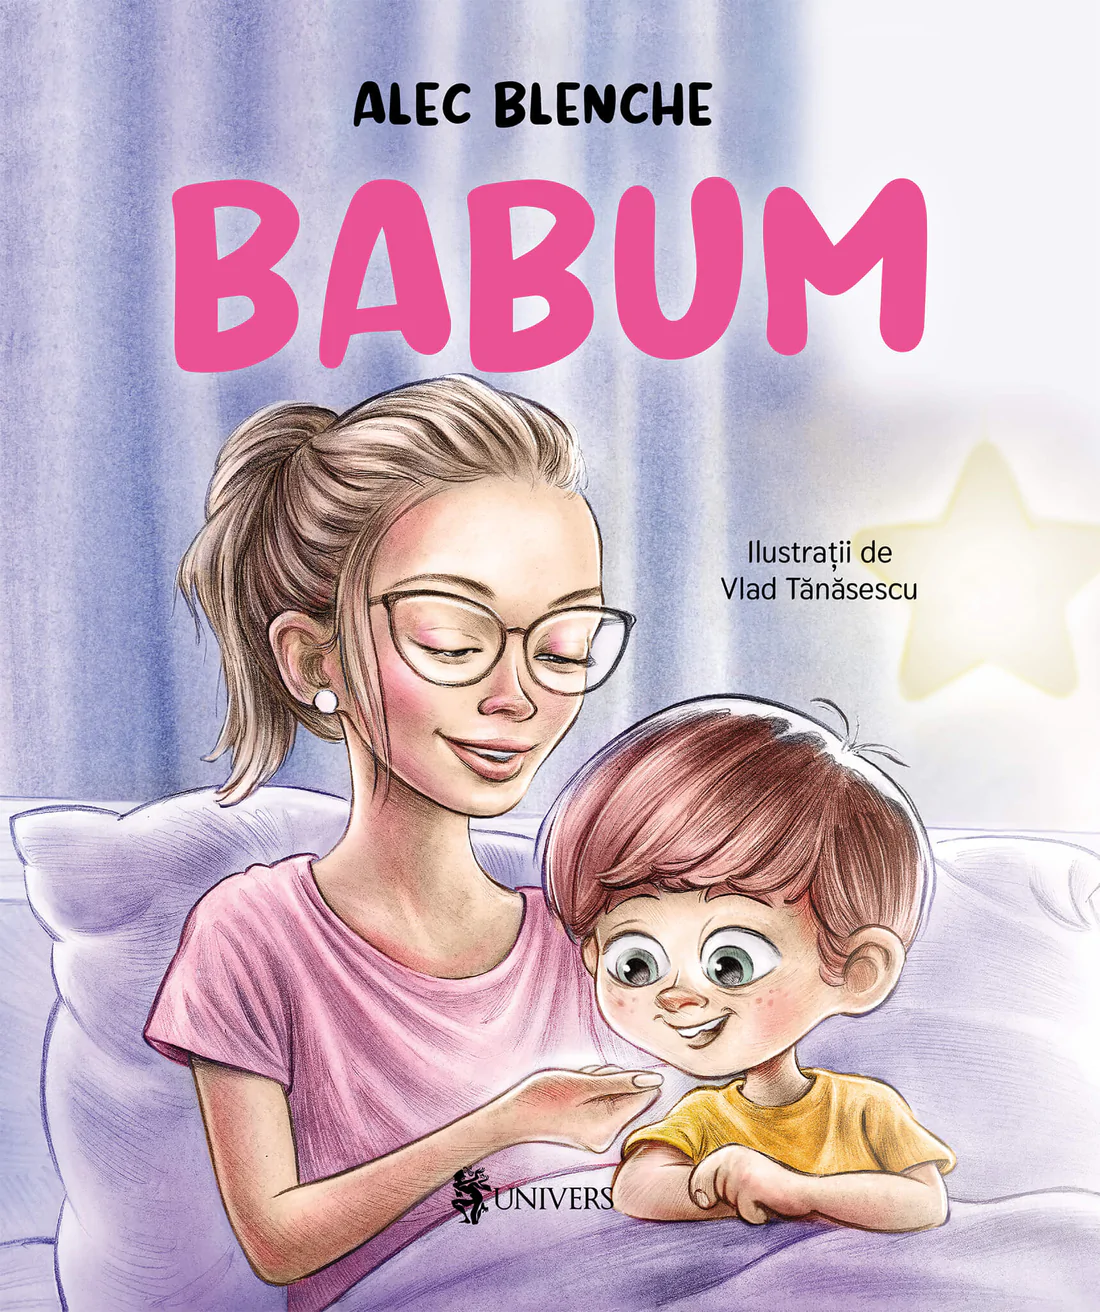 Babum, scrisă de Alec Blenche, o carte sensibilă și plină de mister pe care copiii o vor iubi